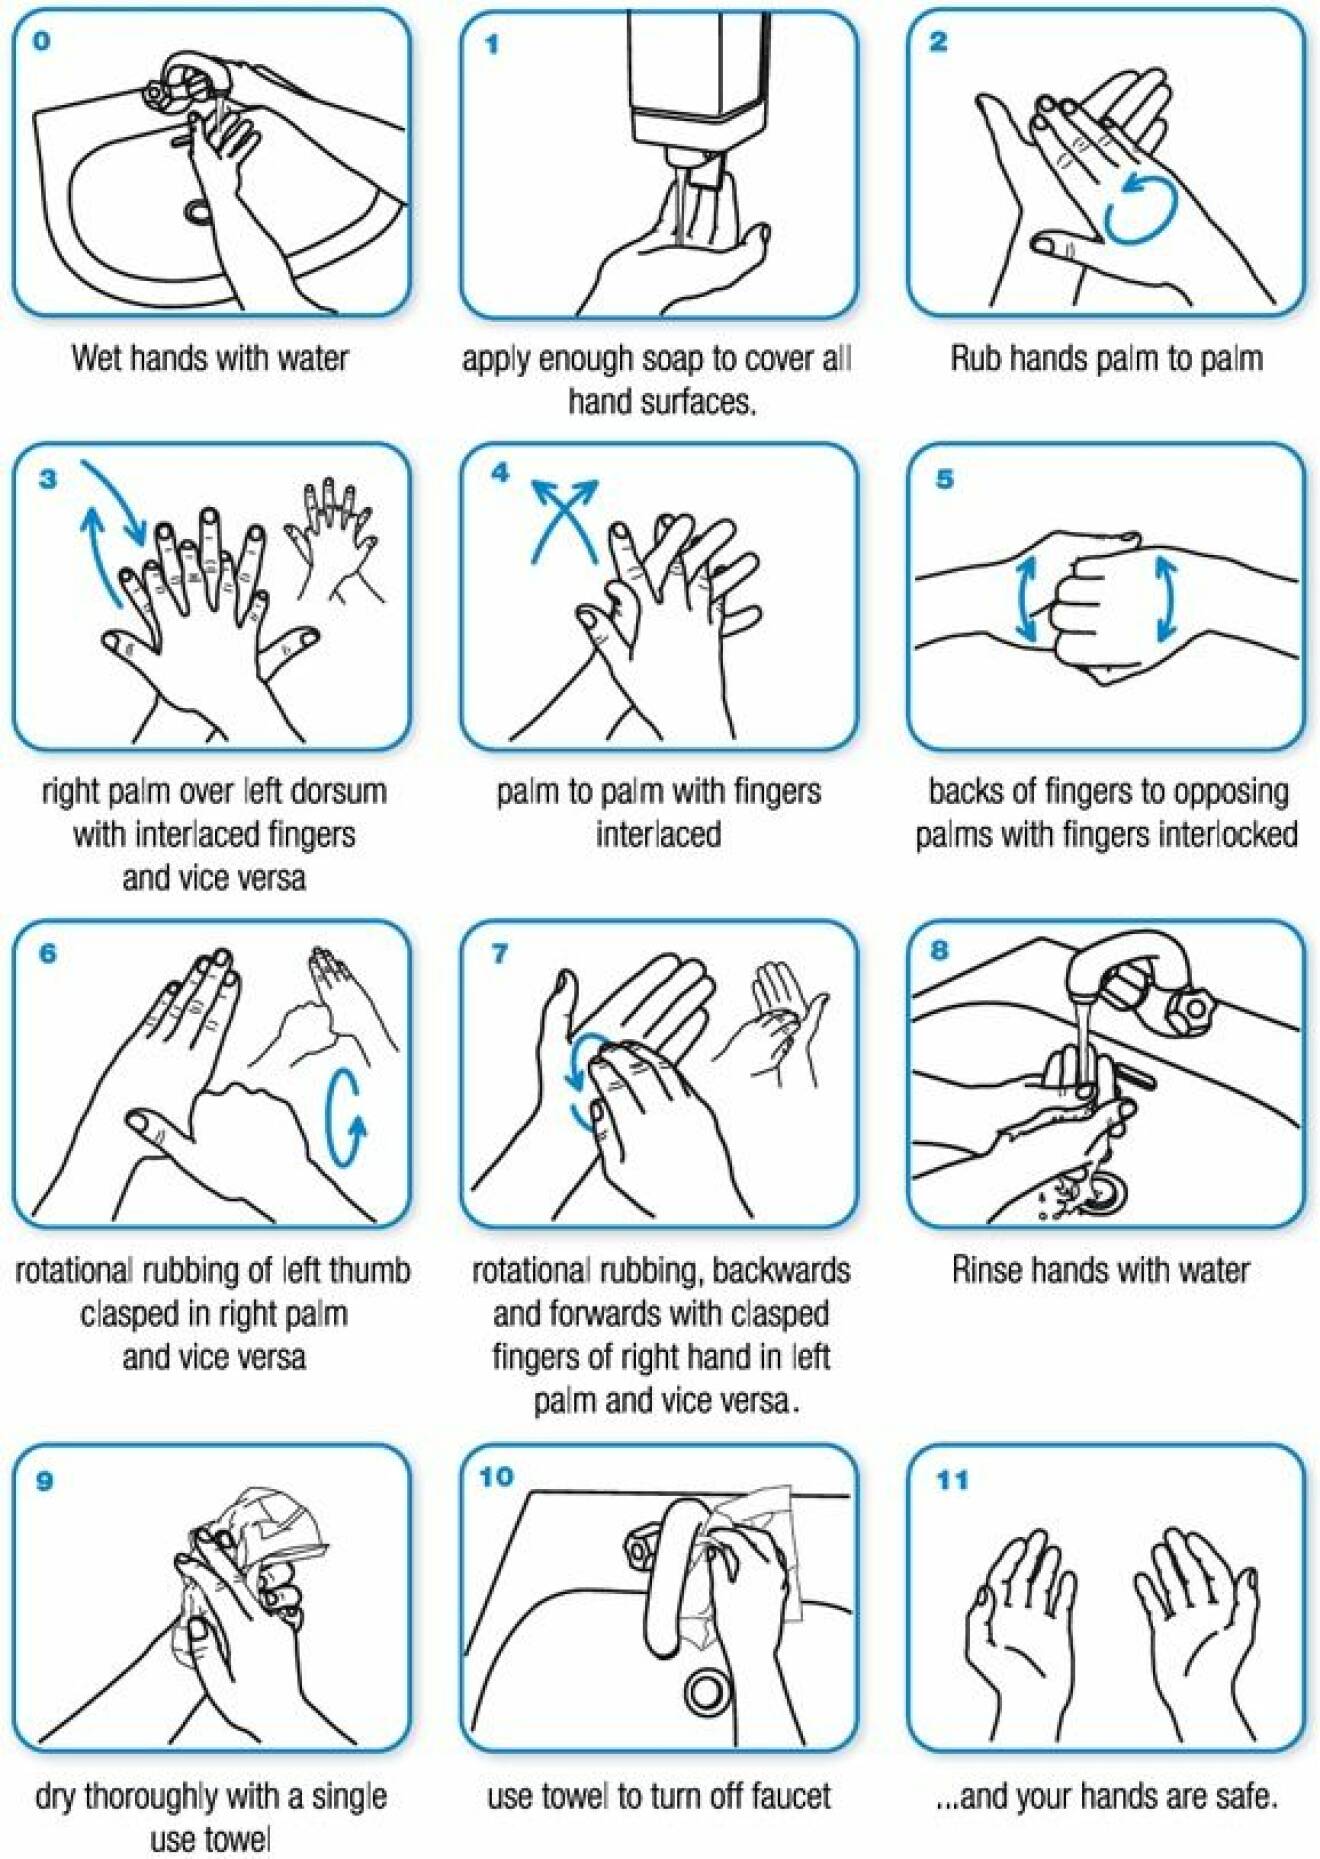 WHO tipsar om hur man kan tvätta händerna för att minska risken för smitta.